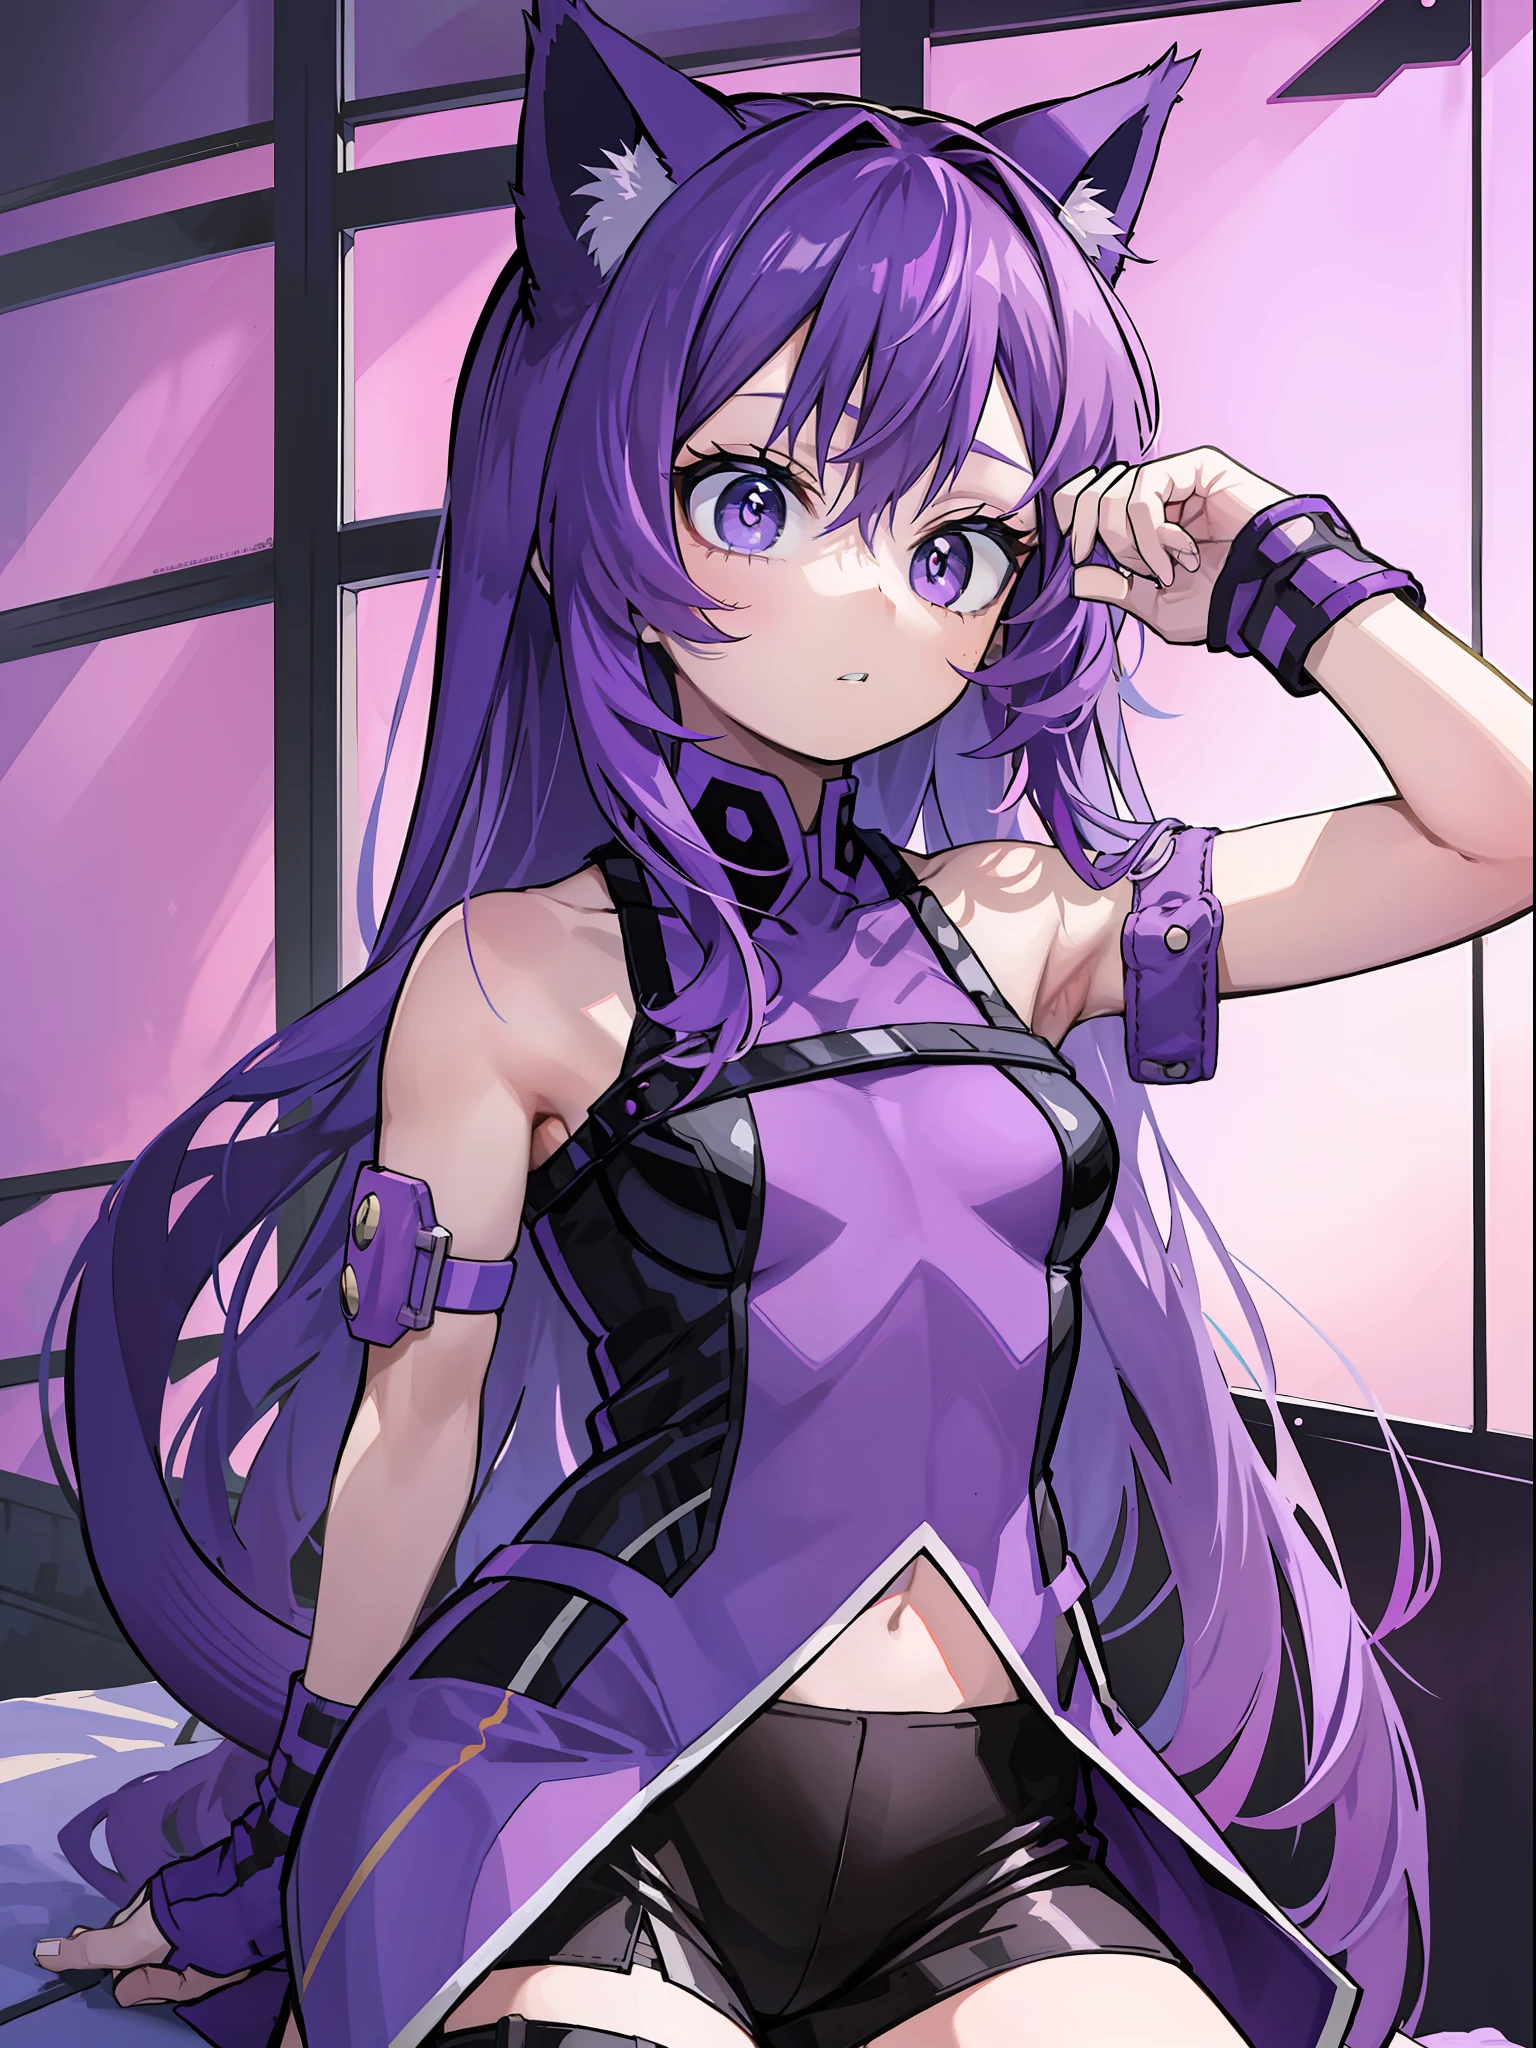 1つの , 肩までのロングヘア, 紫色の髪, 小さな紫色の猫耳, 1つの Purple Cat Tail, 1つのssassin Clothing, 1つのmine Style